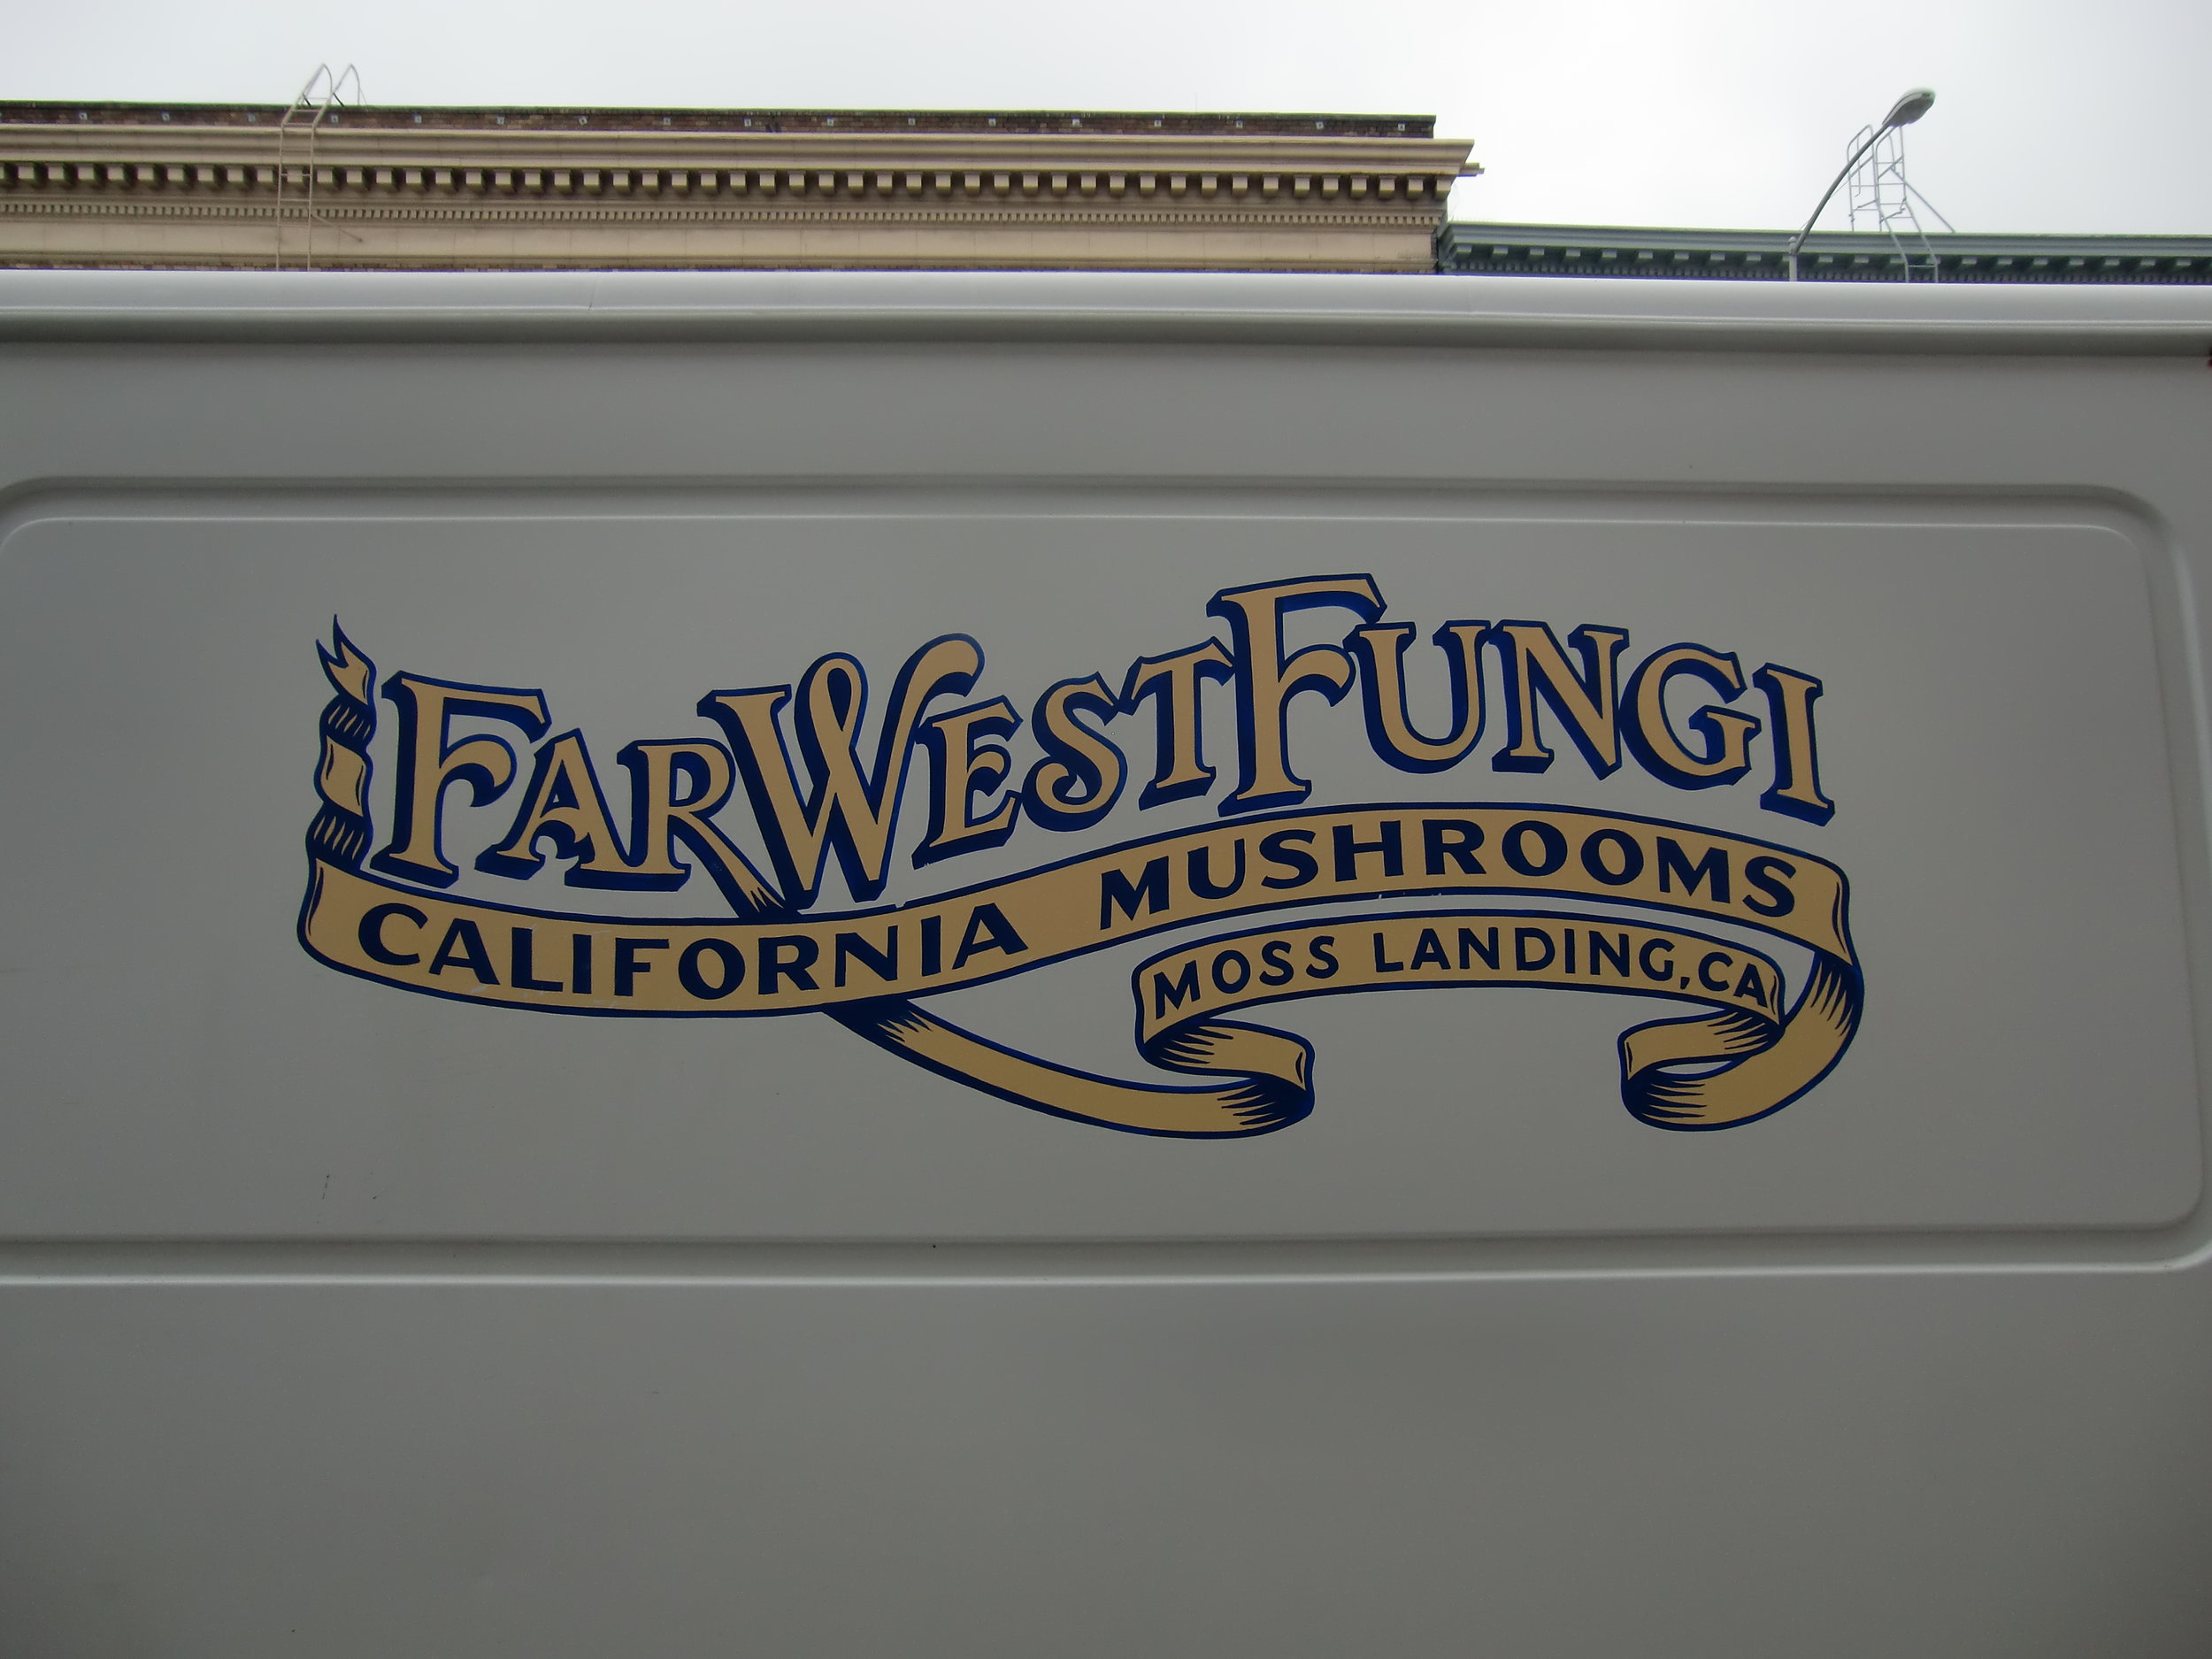 HAND-far-west-fungi-logo-on-van_5958864433_o.jpg